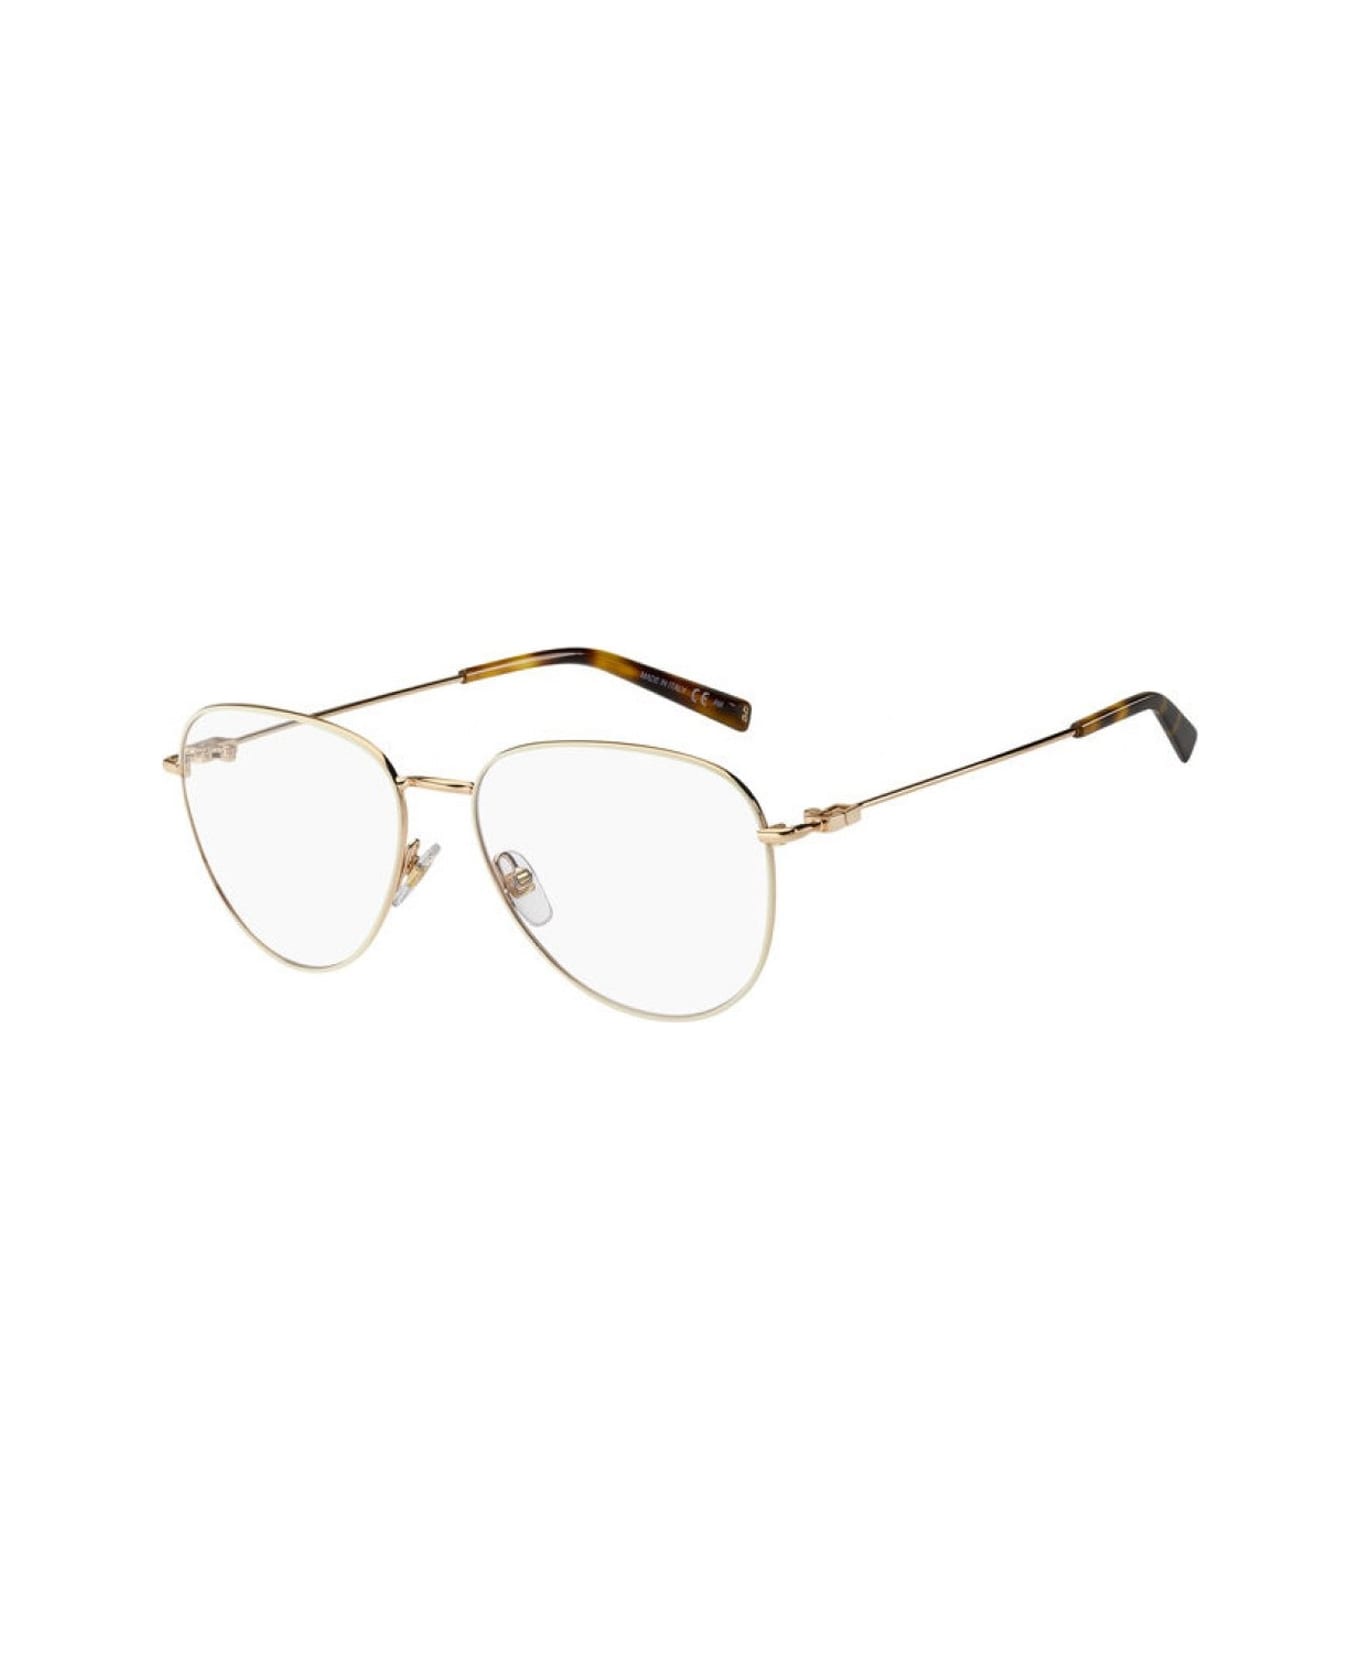 Givenchy Eyewear Gv 0150 Glasses - Oro アイウェア